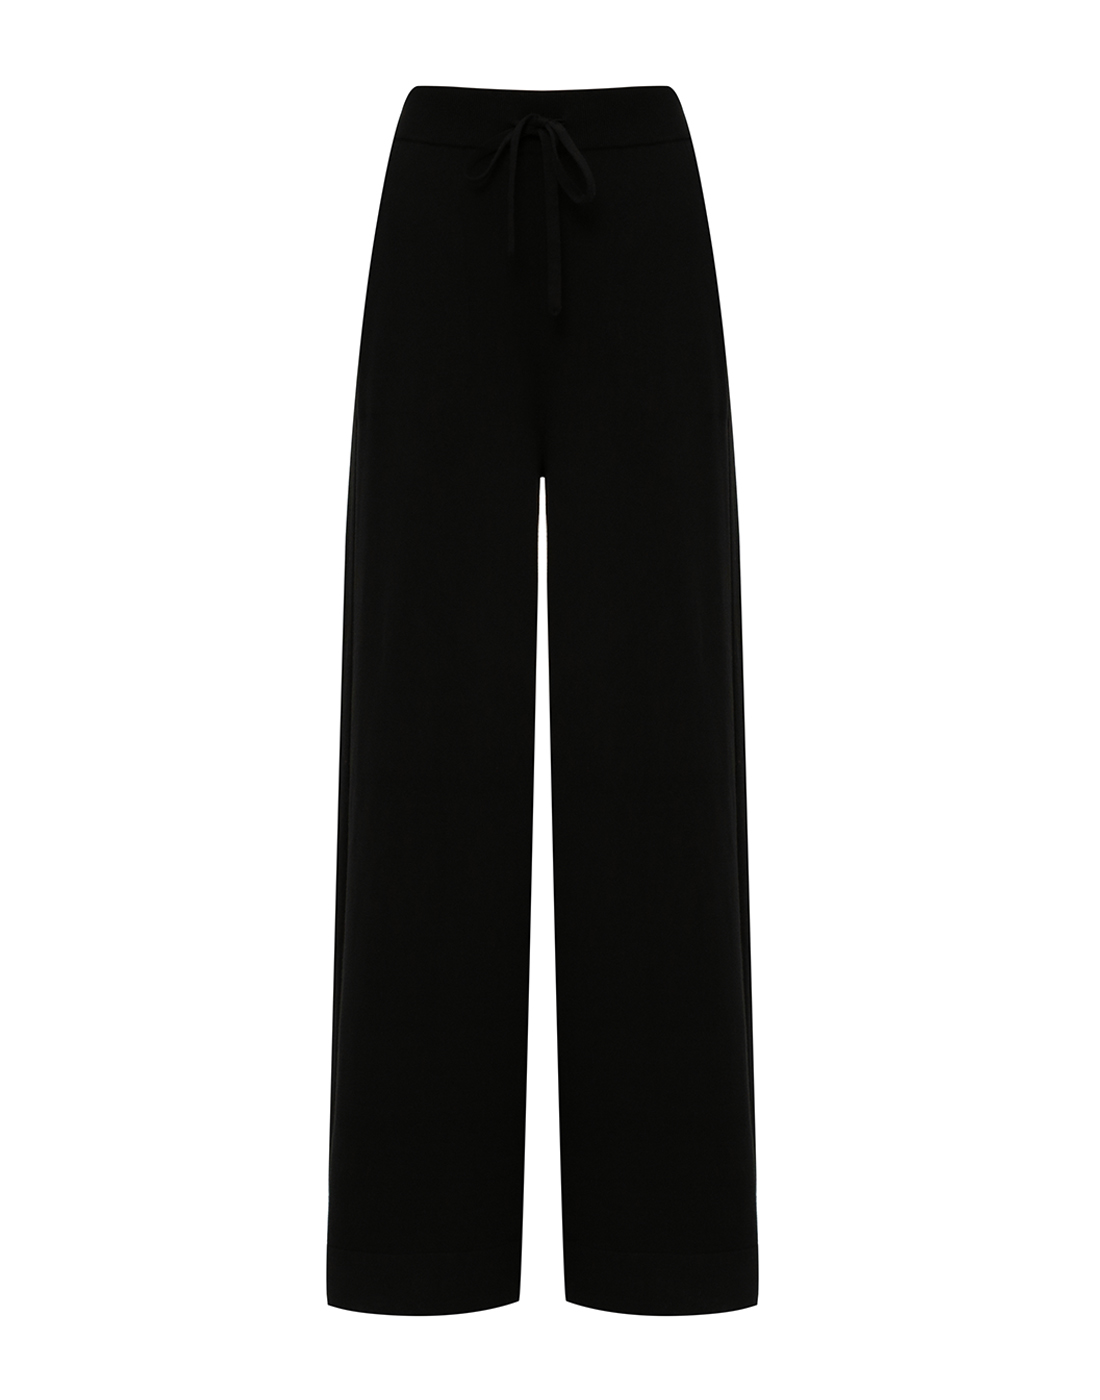 Женские черные брюки Dorothee Schumacher S610302/999-1